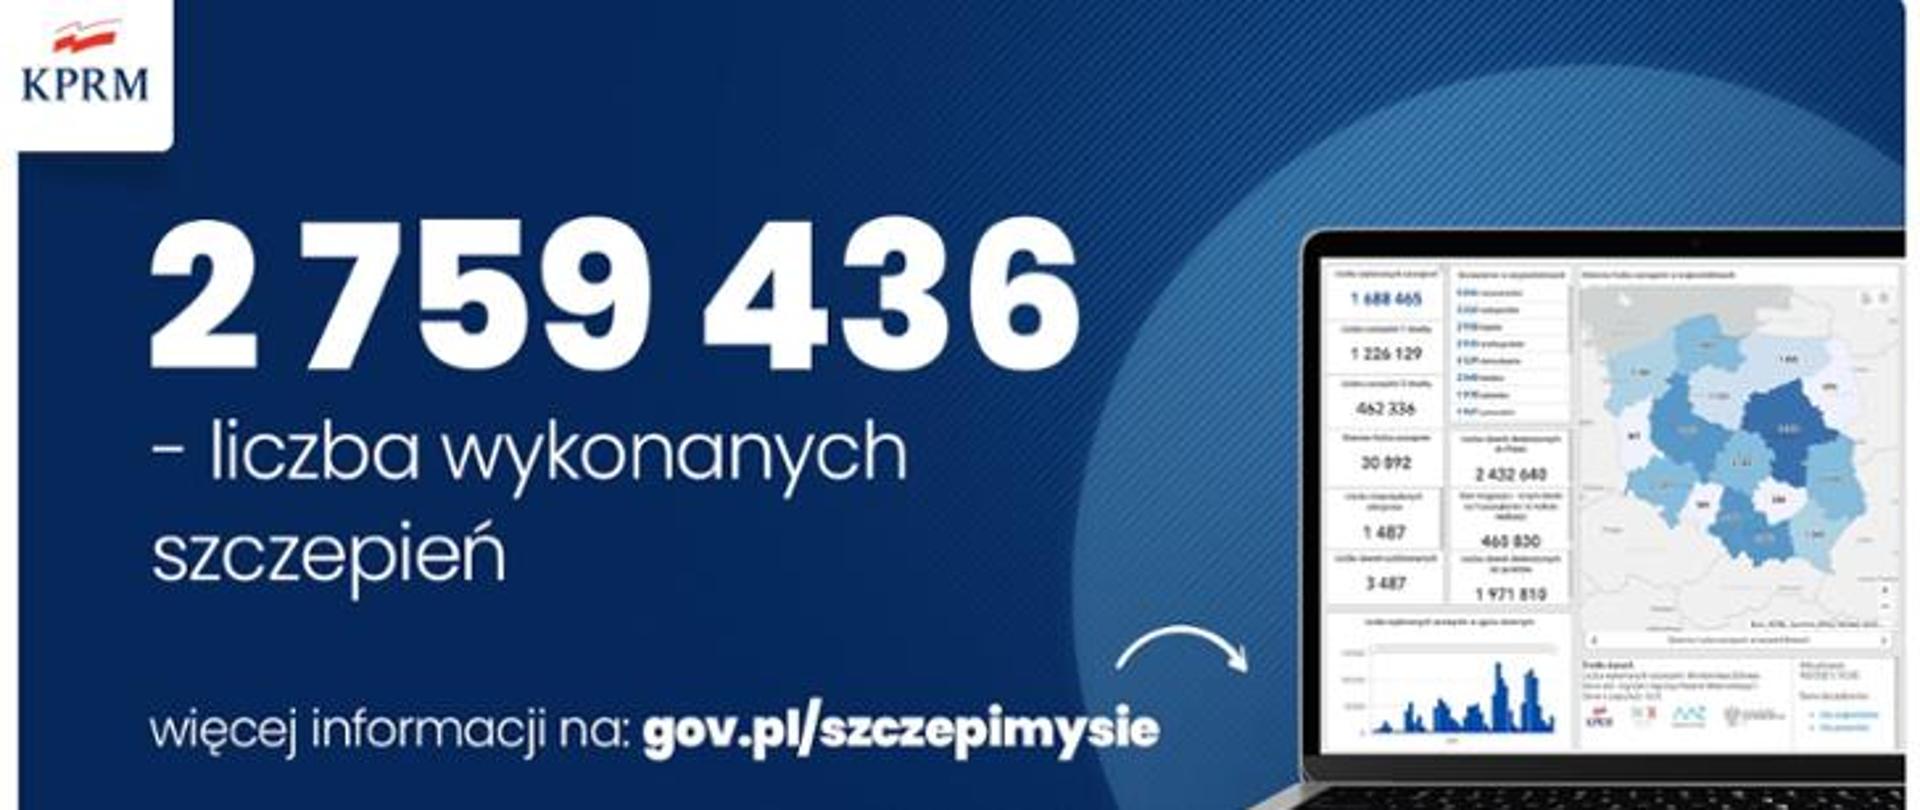 Już 2 759 436 wykonanych szczepień – Polska liderem wśród największych państw UE